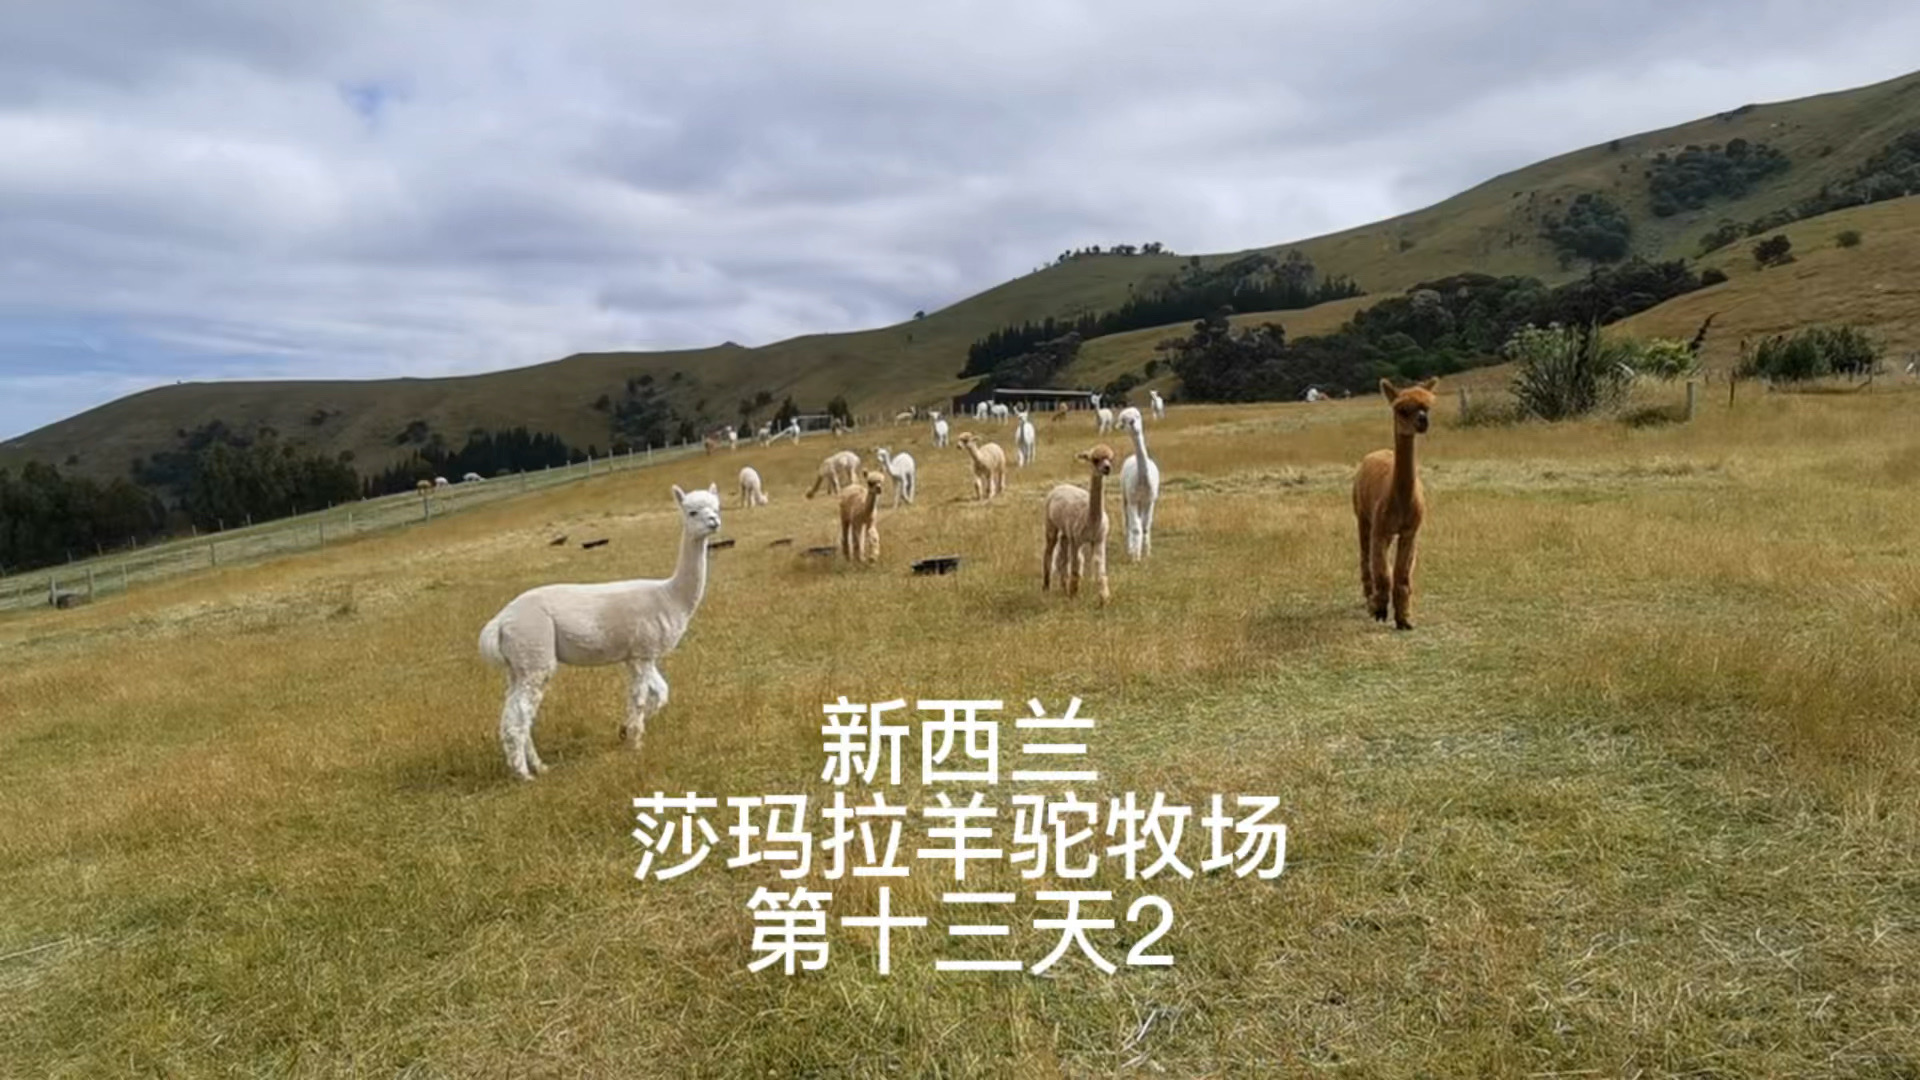 新西兰自驾游-57 莎玛拉羊驼牧场